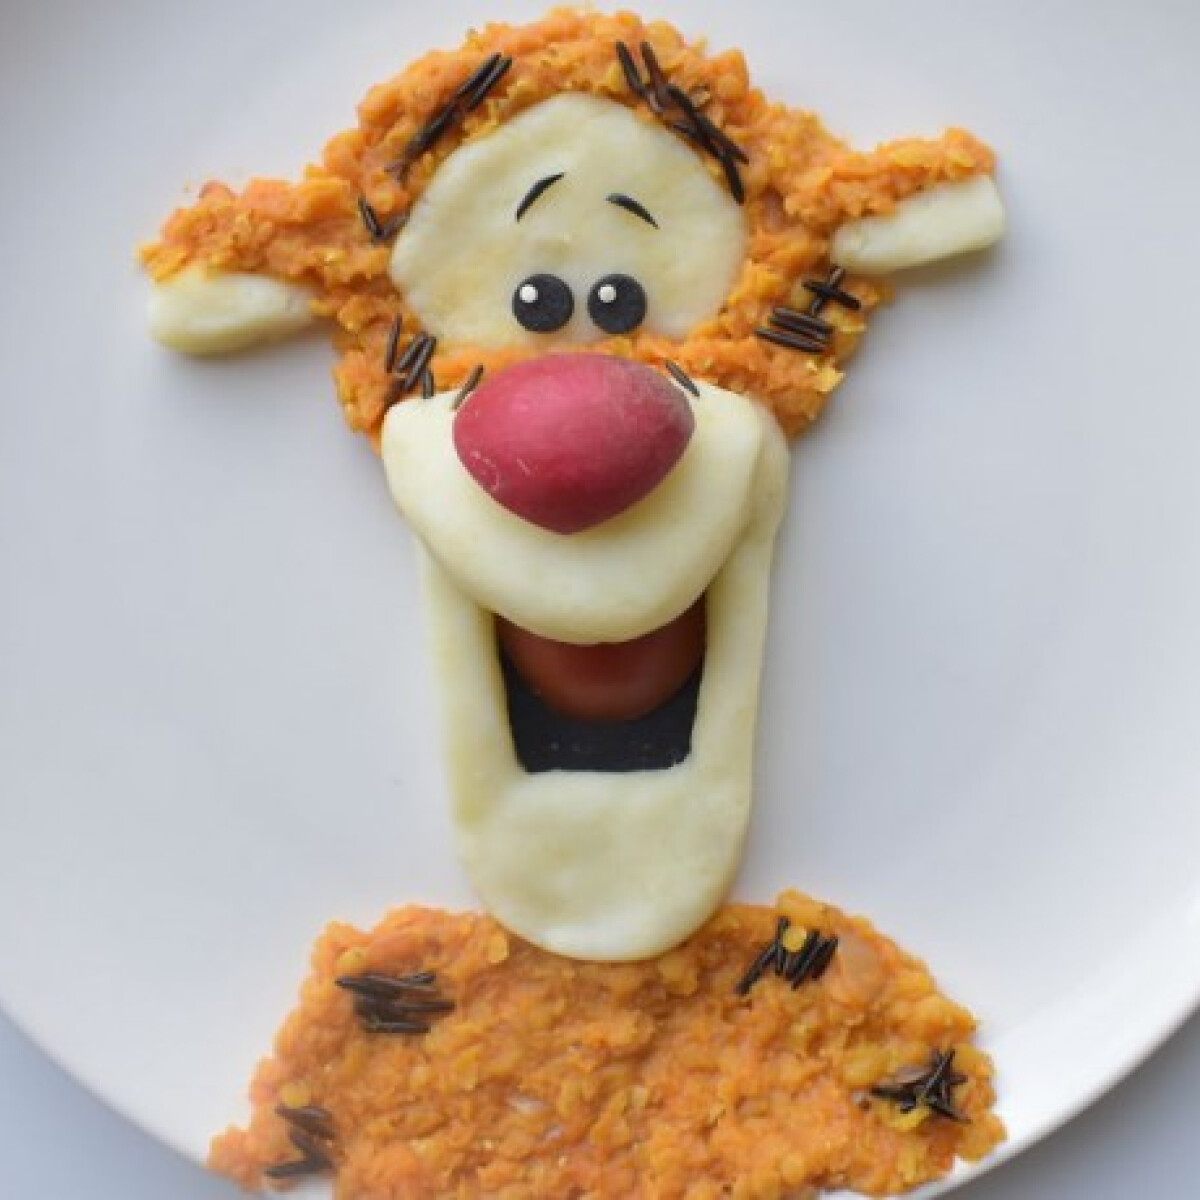 Mesés ételeket készít kisfiának egy anyuka - Művészi alkotások a tányéron